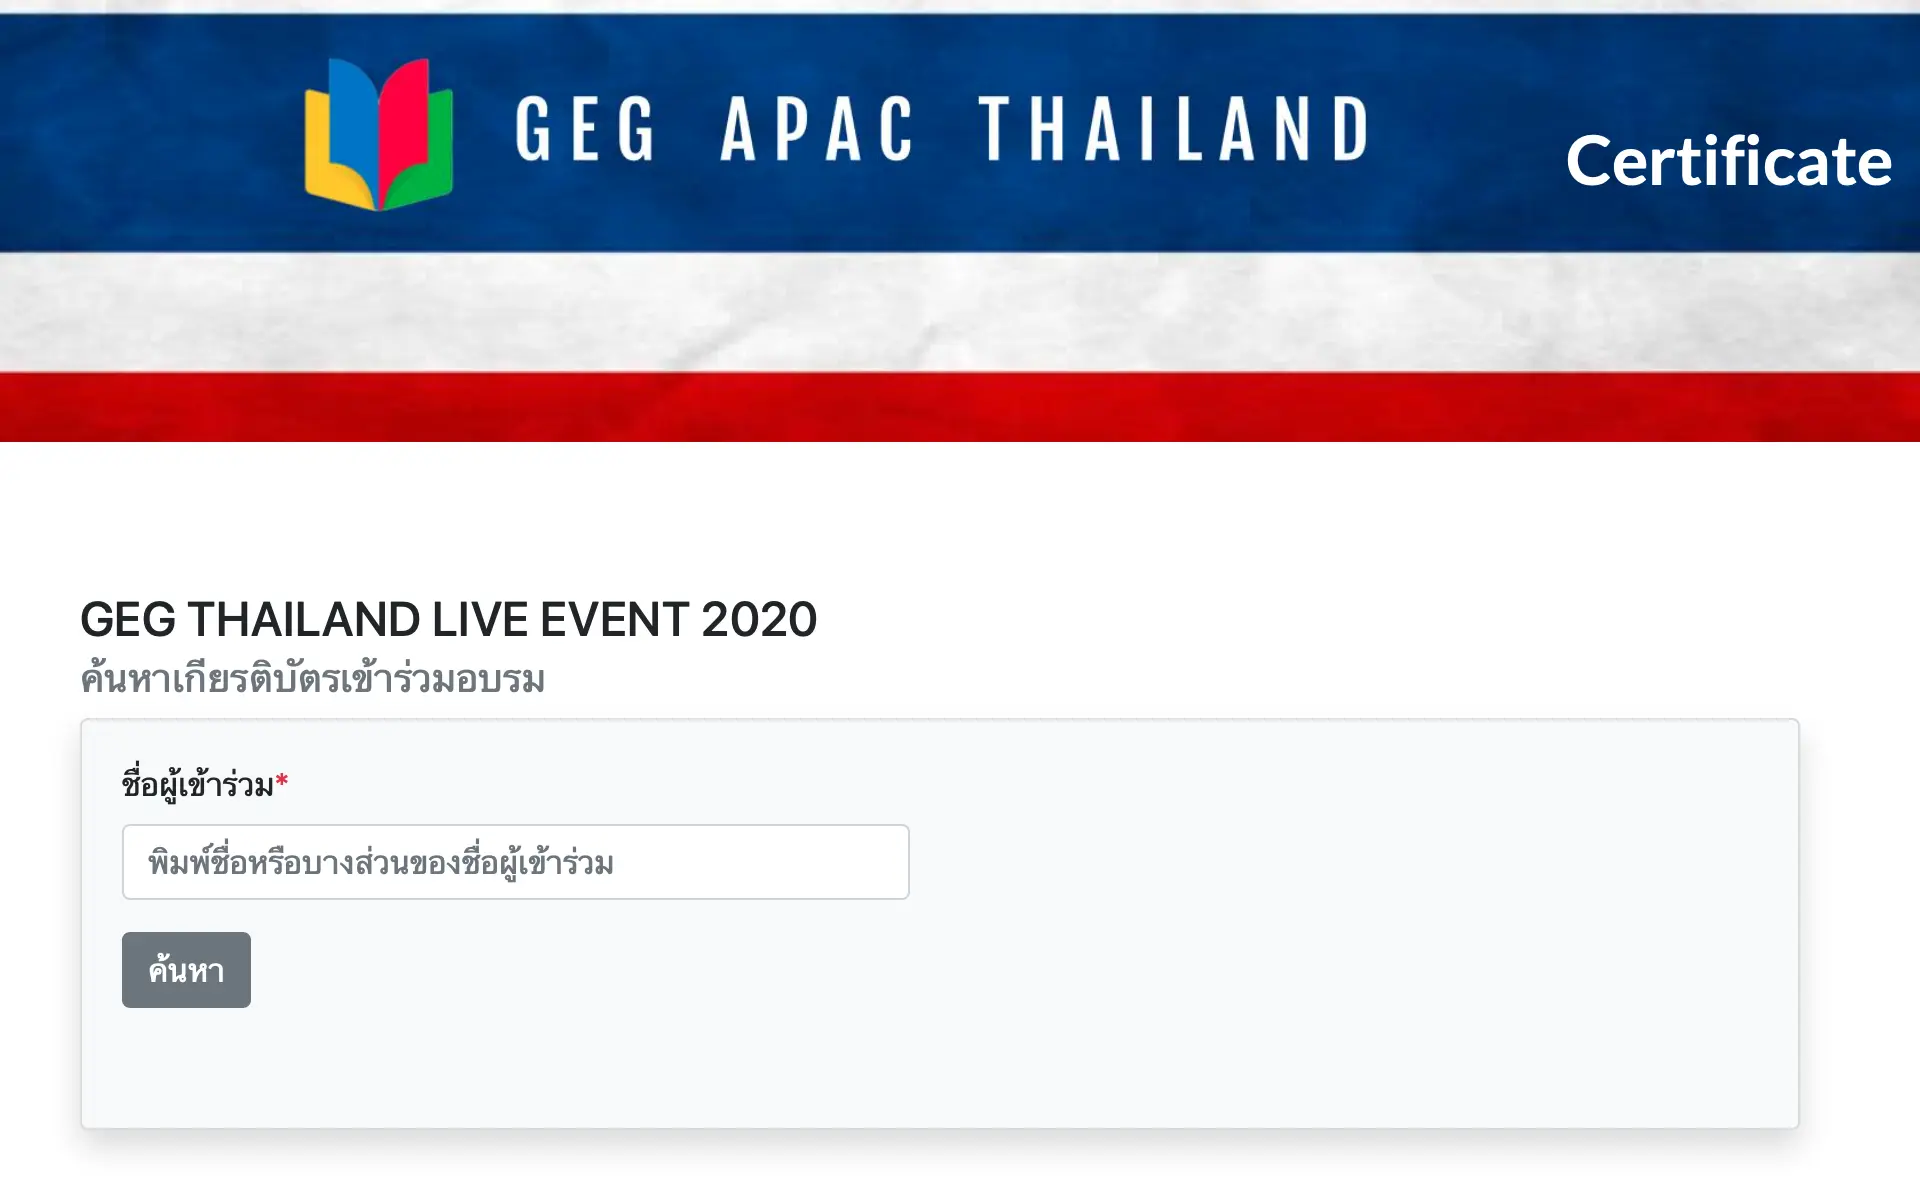 ดาวน์โหลดได้แล้ว วุฒิบัตรการแบรม GEG  Thailand  Live Event 23-25 May 2020